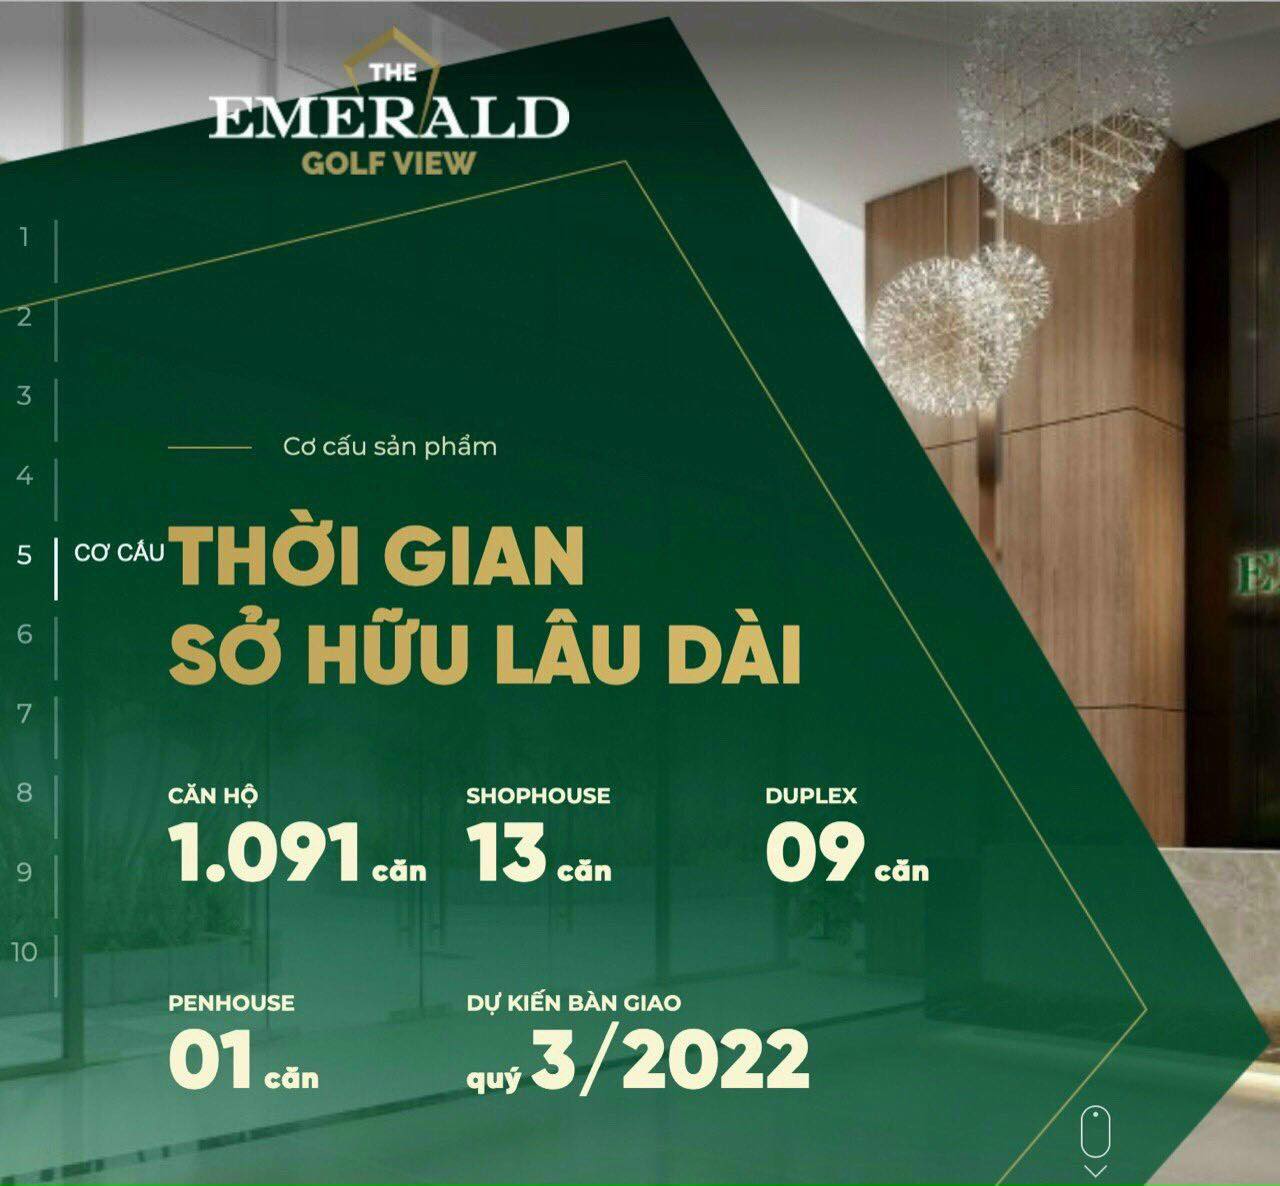 Dự án nóng nhất thành phố Thuận An- Emerald Golf View